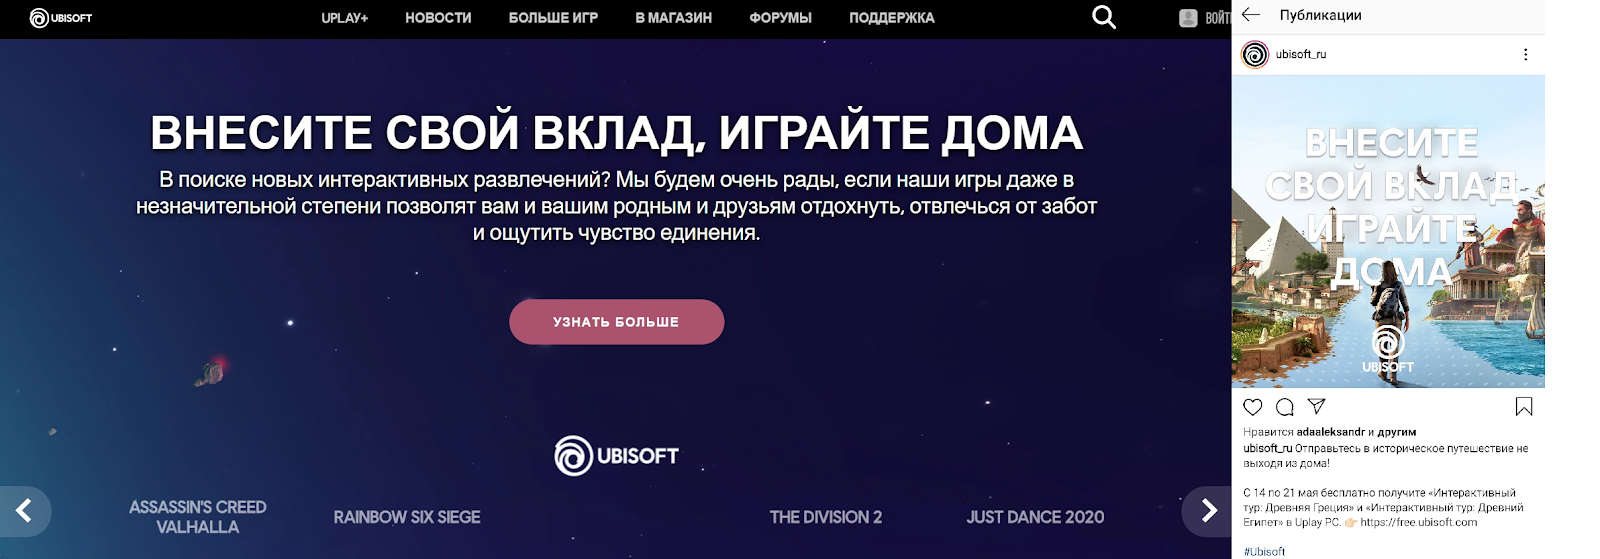 Реклама от Ubisoft в Instagram согласуется с баннером на главной странице сайта